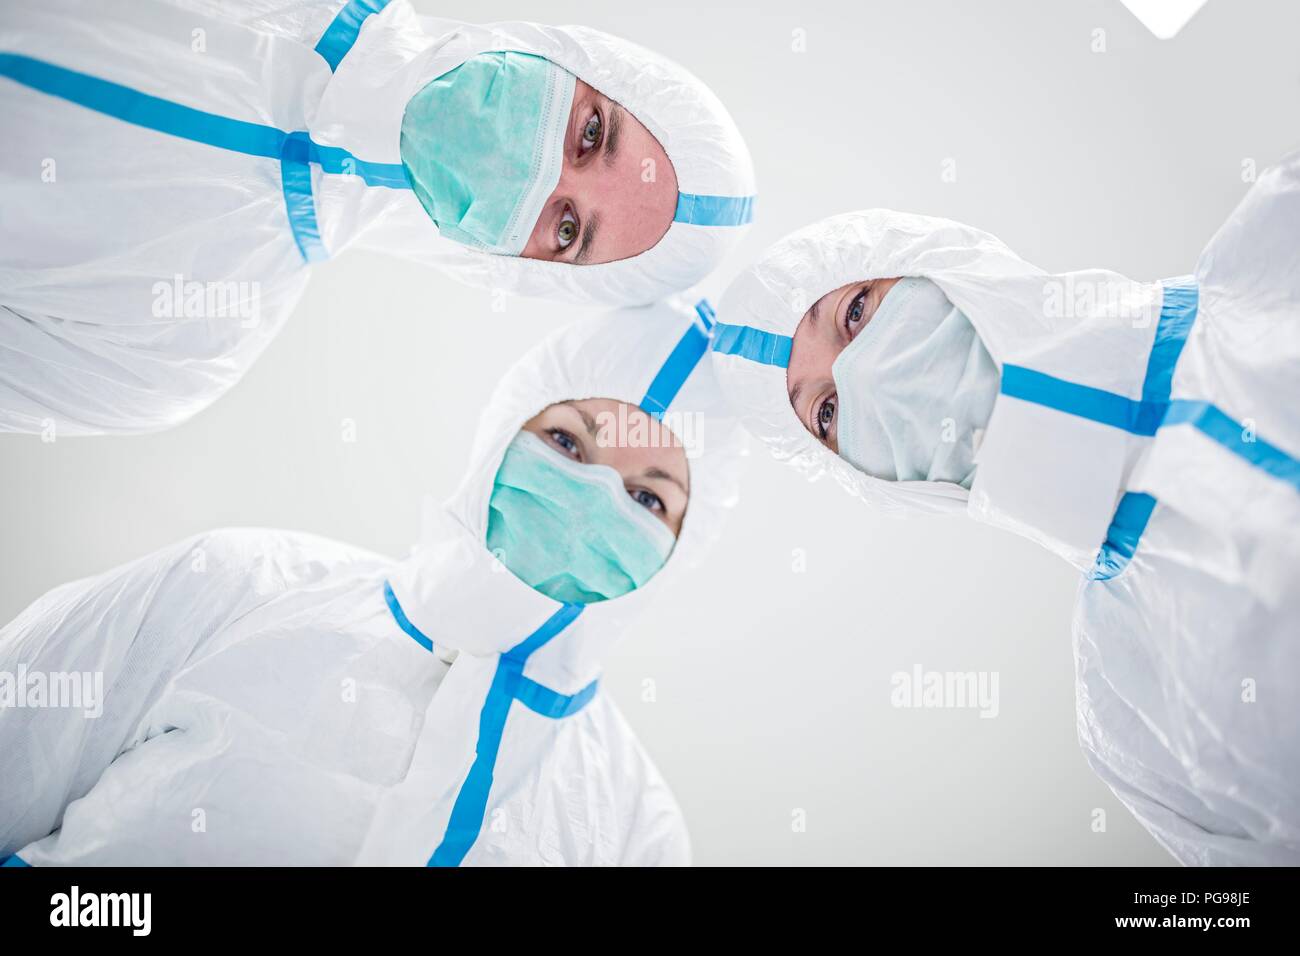 Des techniciens de laboratoires équipés de vêtements de protection et de masques dans un laboratoire qui doit maintenir un environnement stérile. Banque D'Images